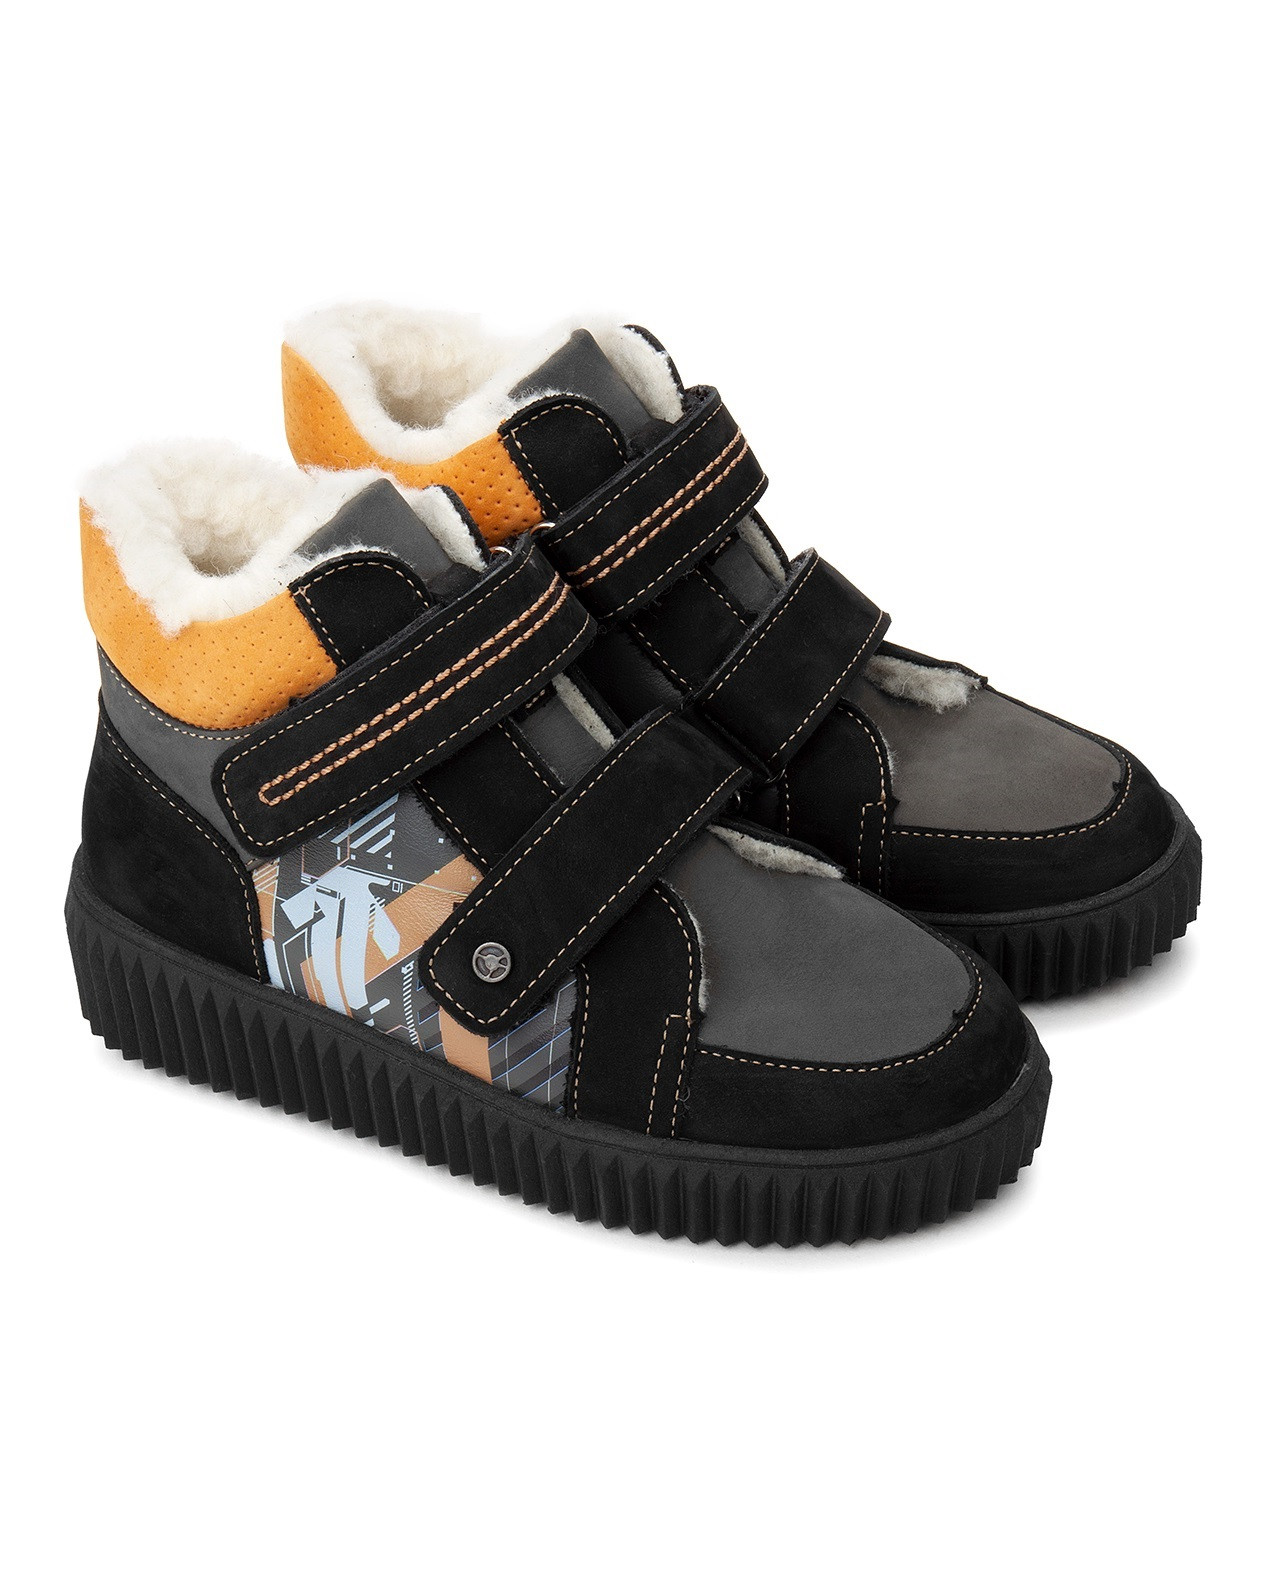 Ботинки детские Tapiboo КАИР терракот/принт-схема (80908, 33) ботинки детские tapiboo каир 80840 39